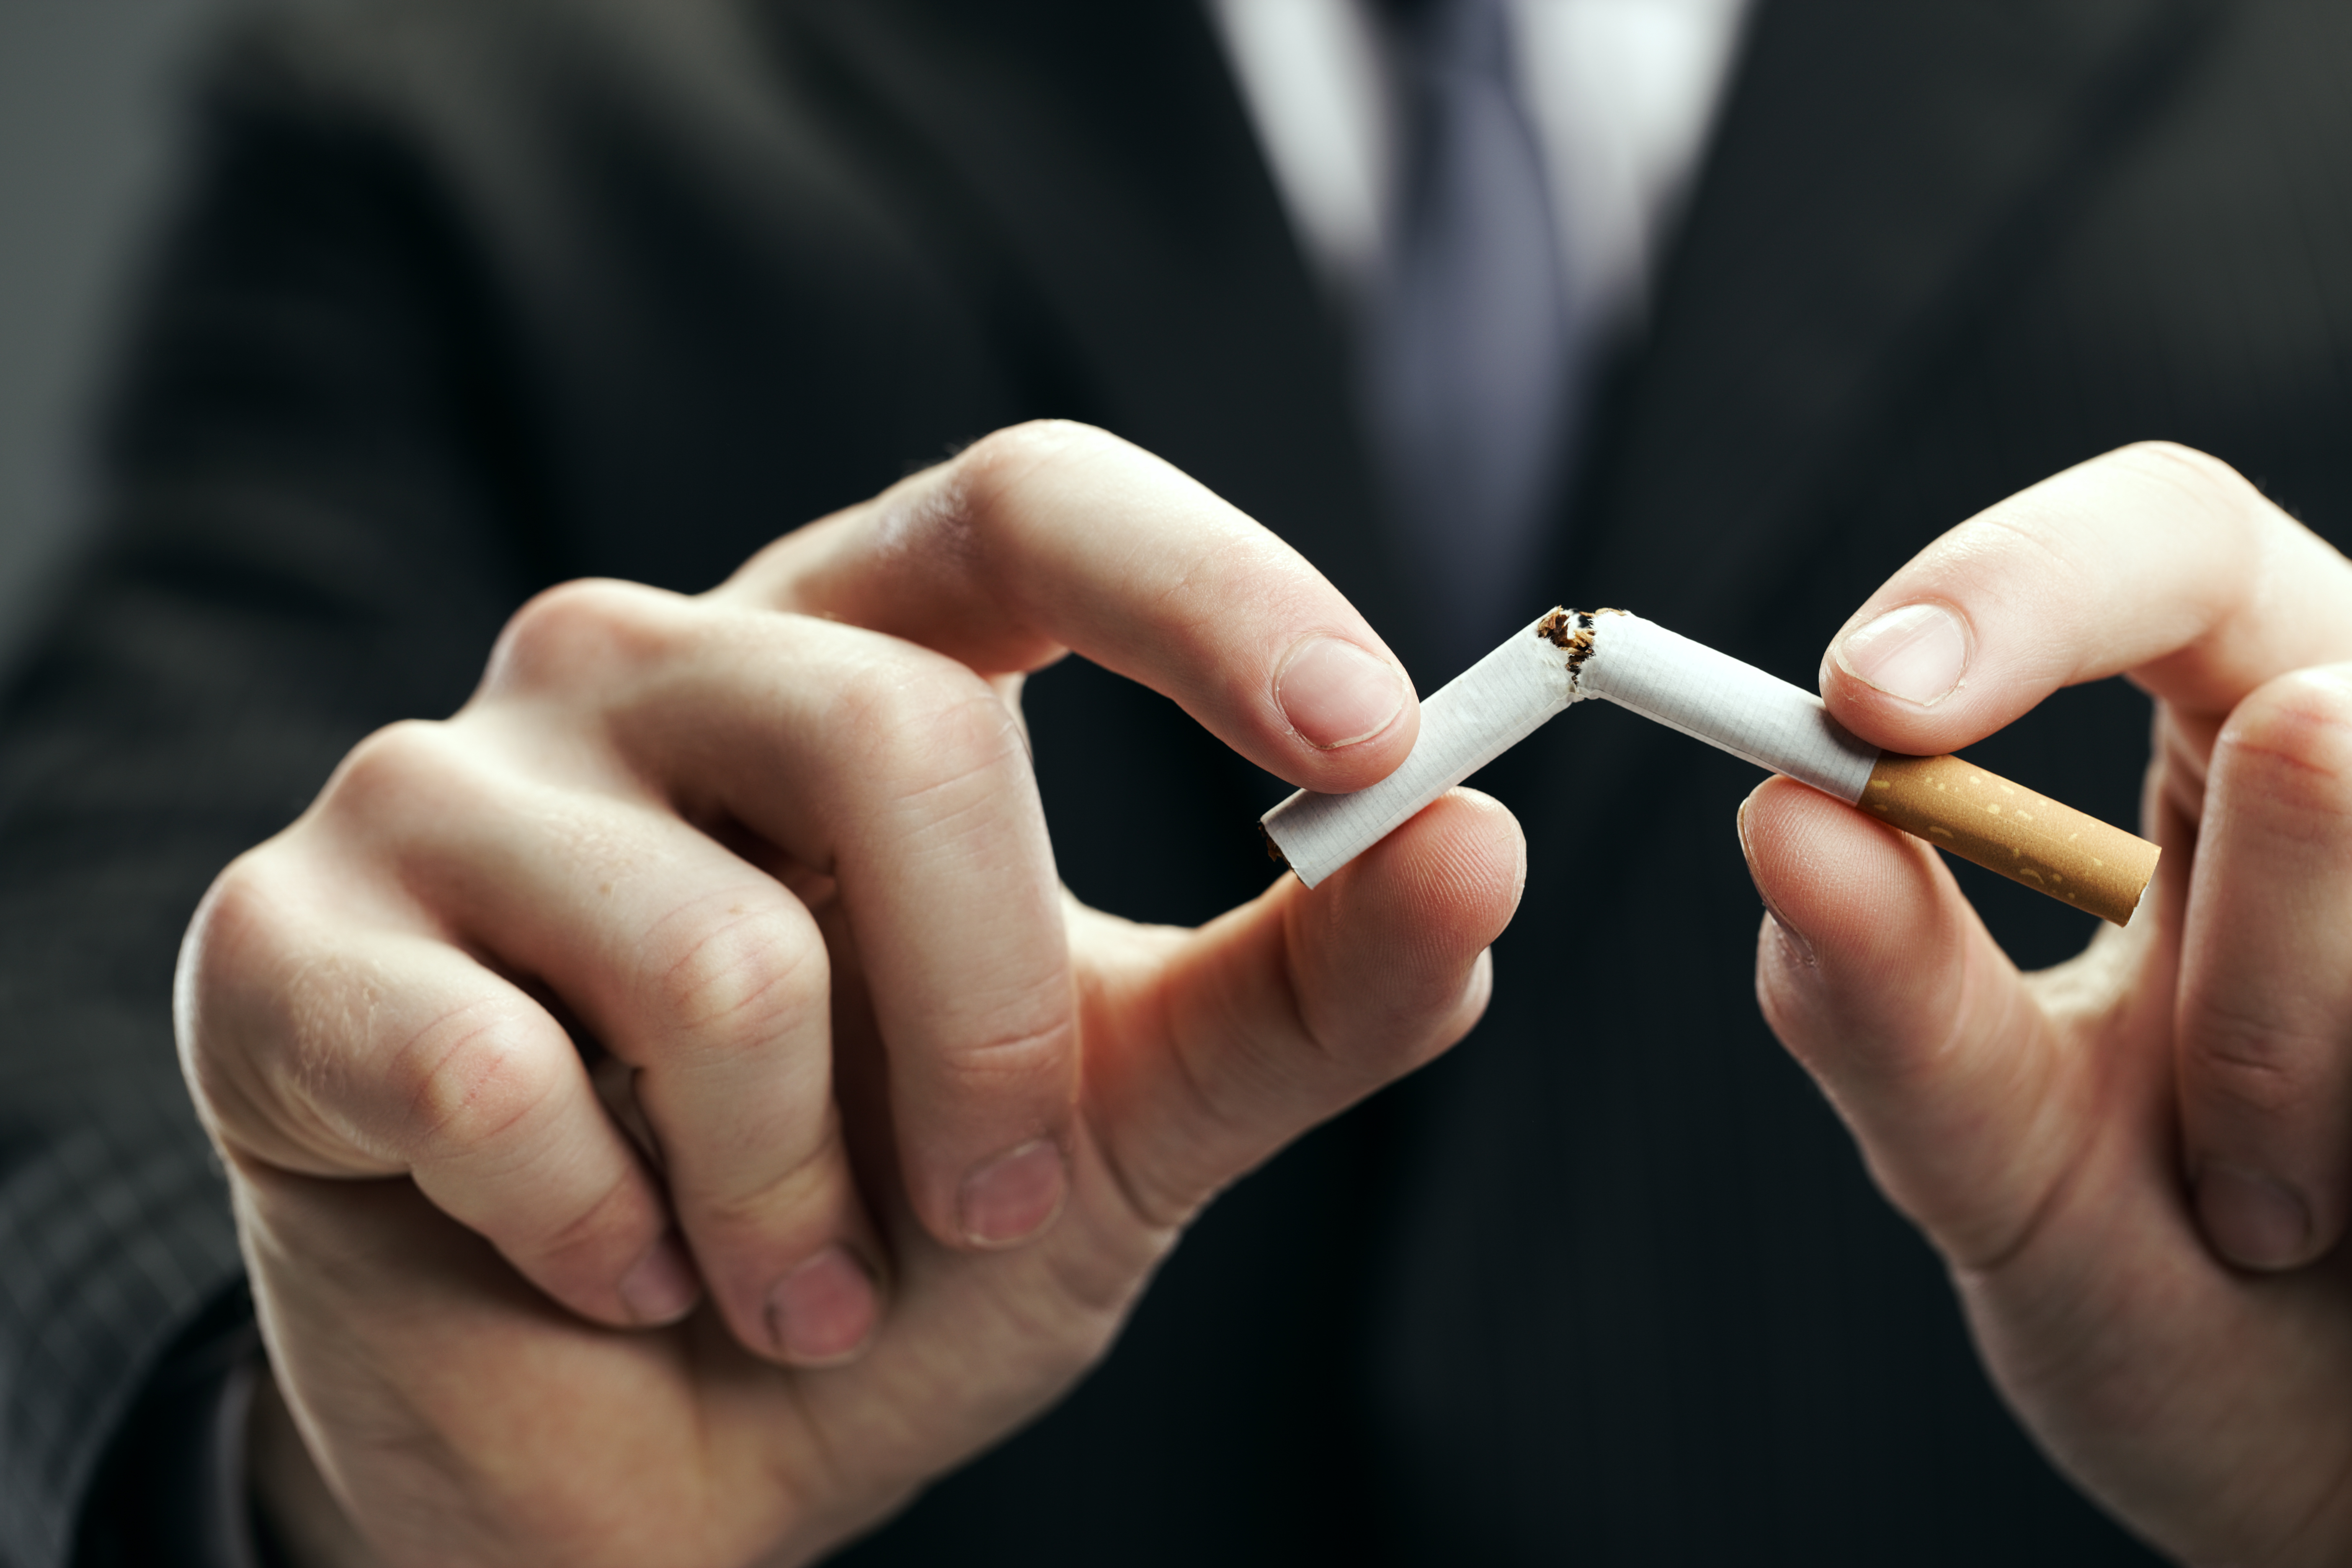 Dohányzás járvány idején: a koronavírus lesz a cigarettázás halála?